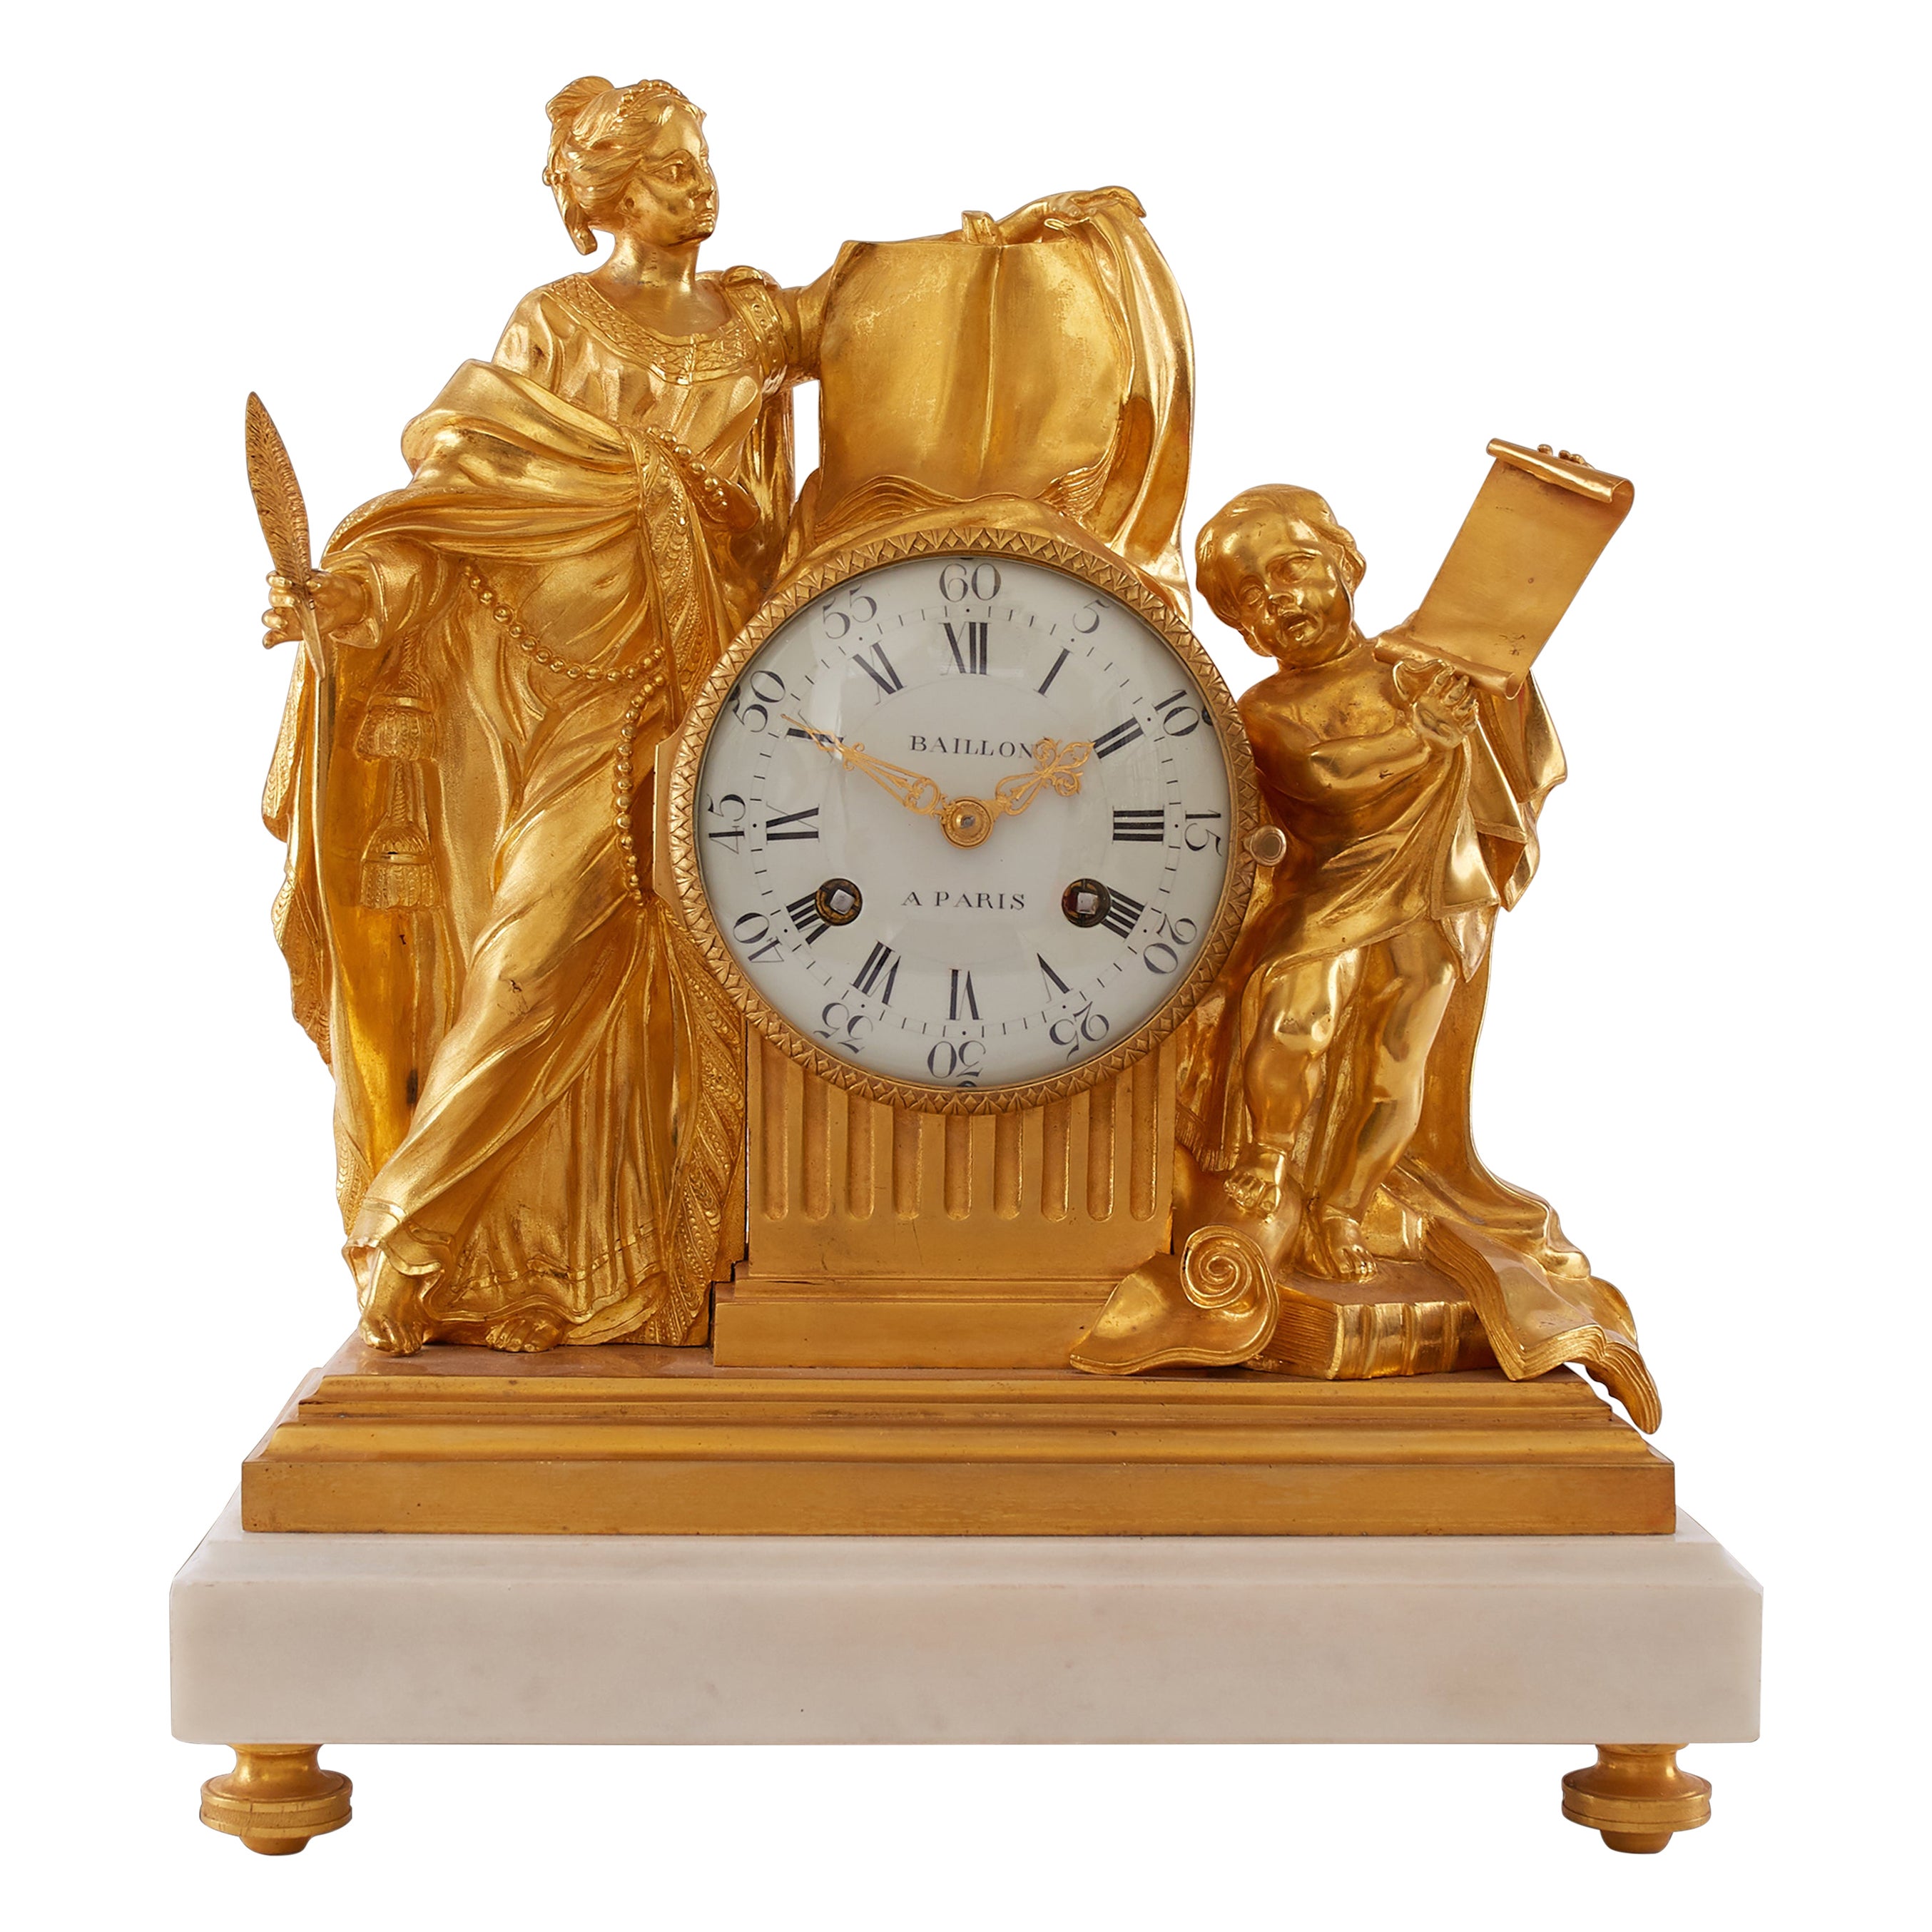 18th Century Clock, Baillon in Paris